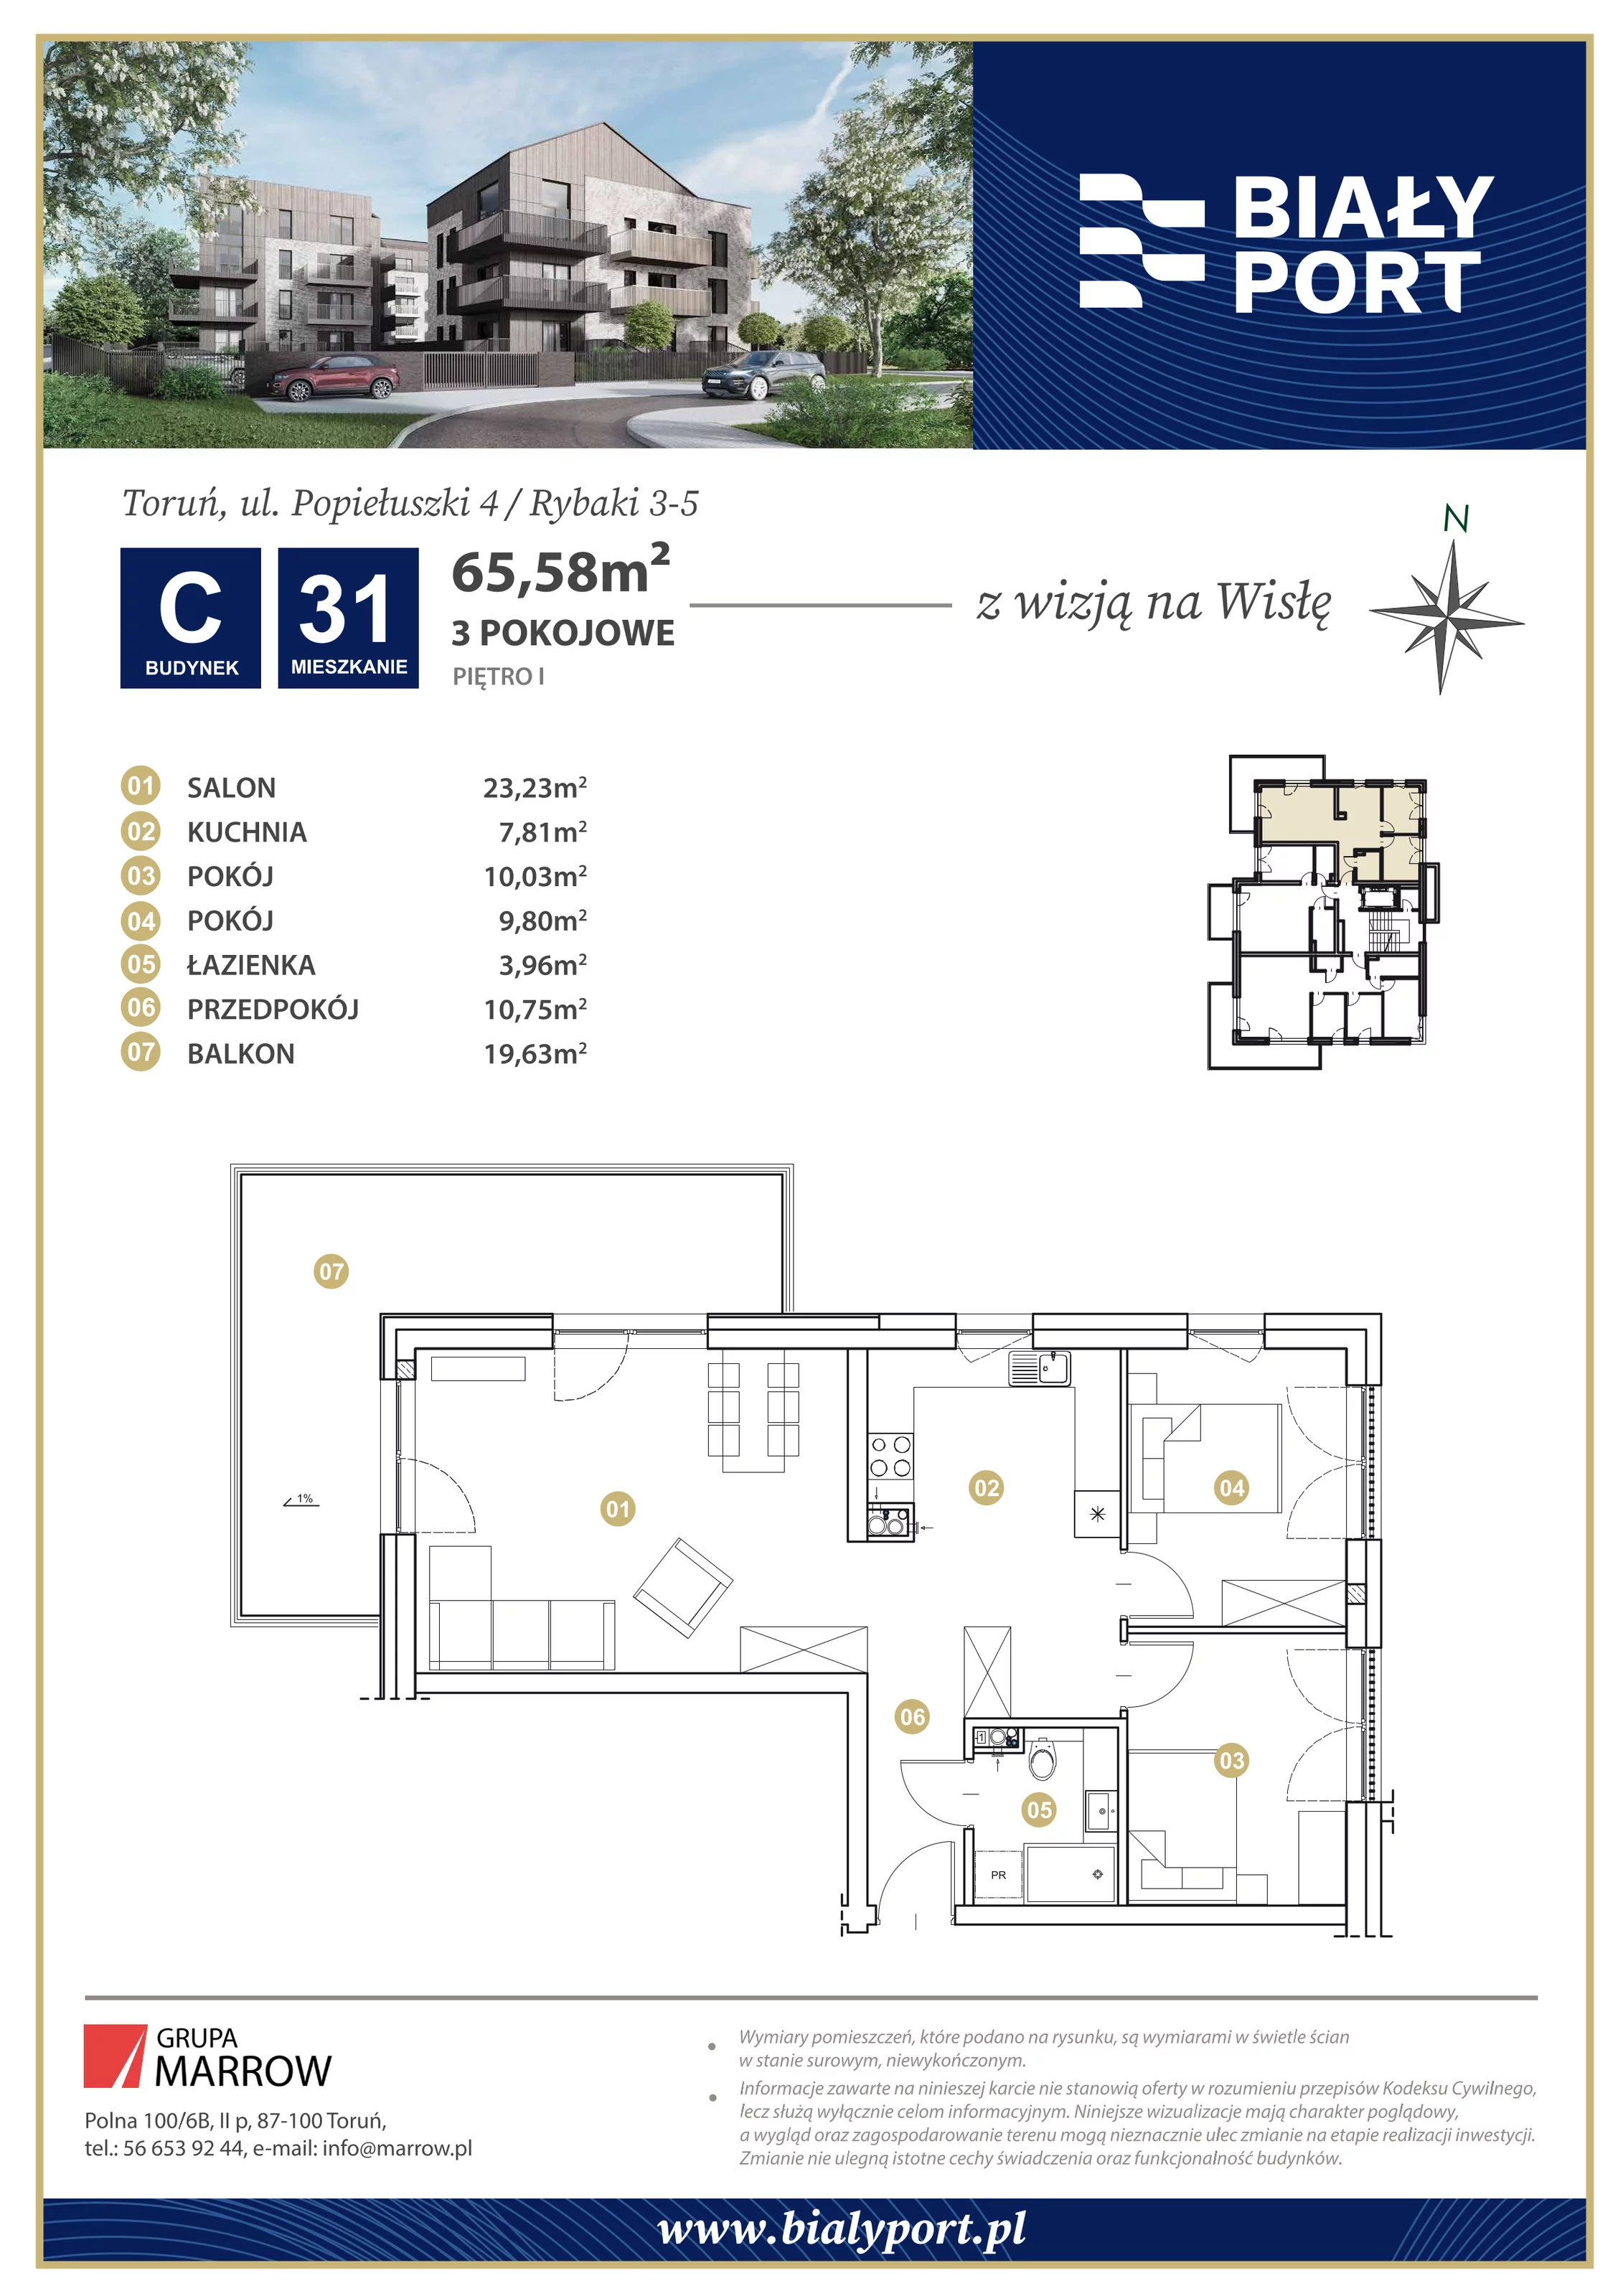 Mieszkanie 65,58 m², piętro 1, oferta nr 31, Biały Port, Toruń, Rybaki, ul. Popiełuszki 4